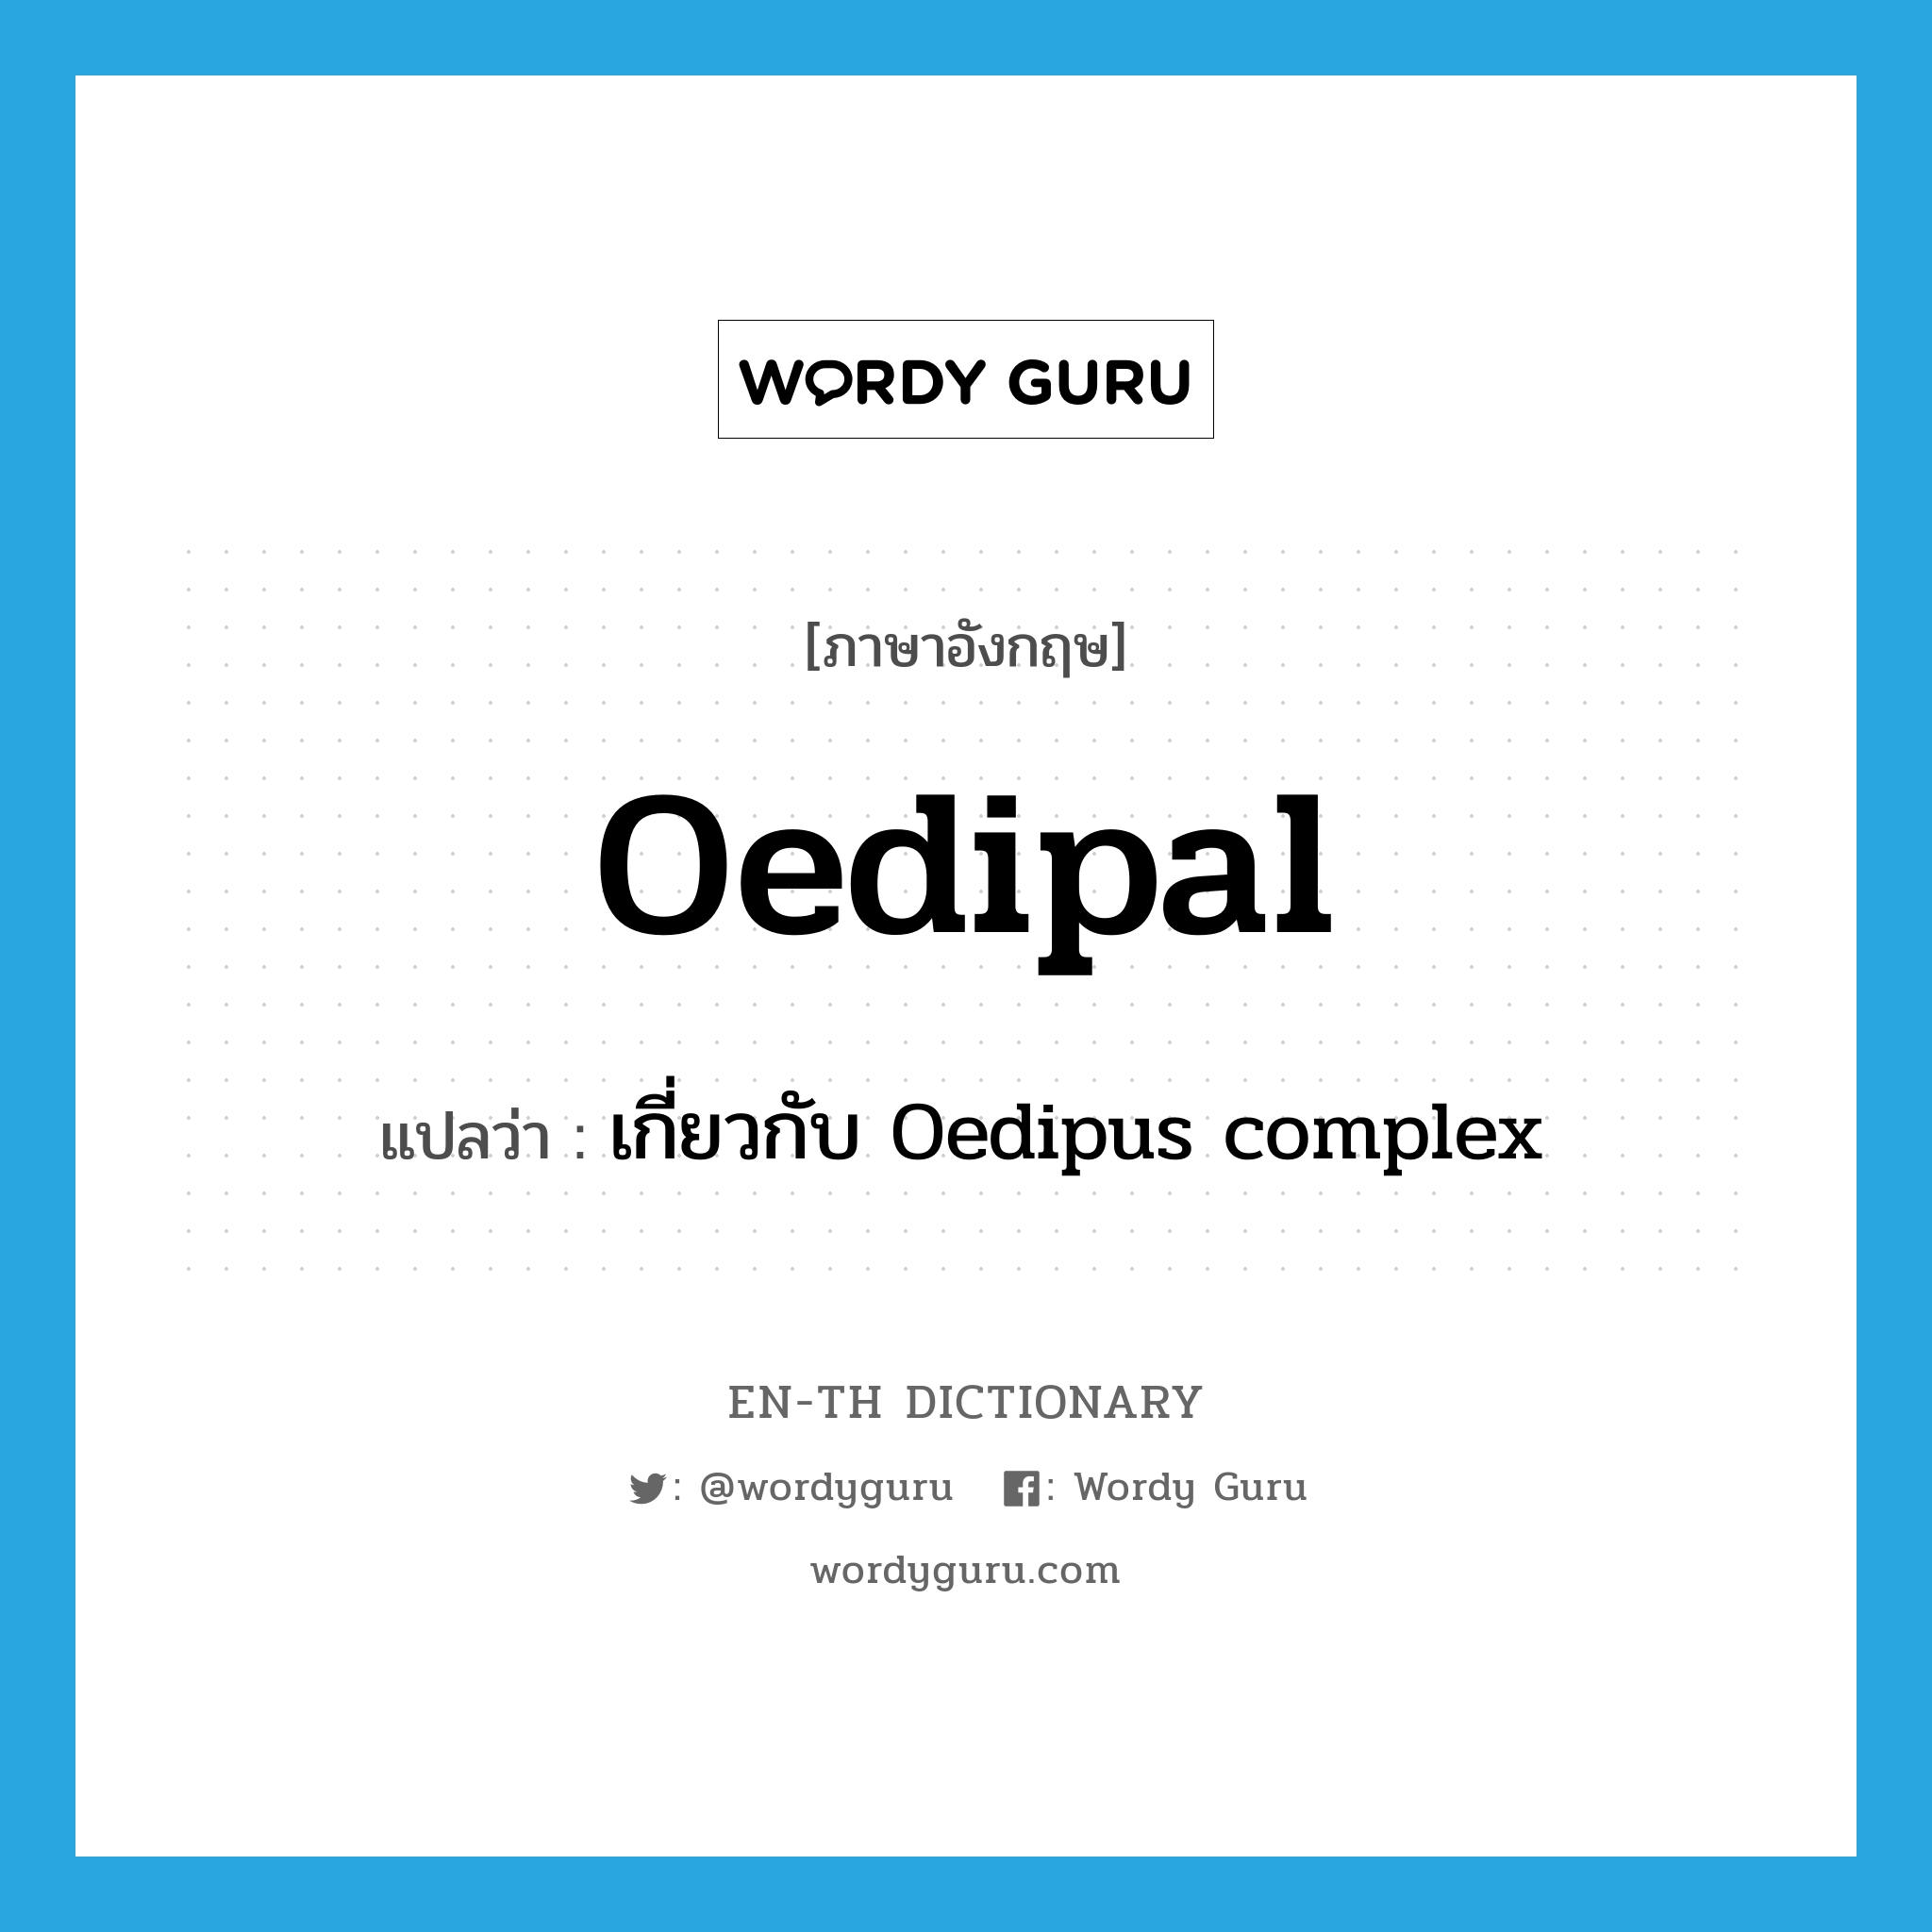 เกี่ยวกับ Oedipus complex ภาษาอังกฤษ?, คำศัพท์ภาษาอังกฤษ เกี่ยวกับ Oedipus complex แปลว่า Oedipal ประเภท ADJ หมวด ADJ